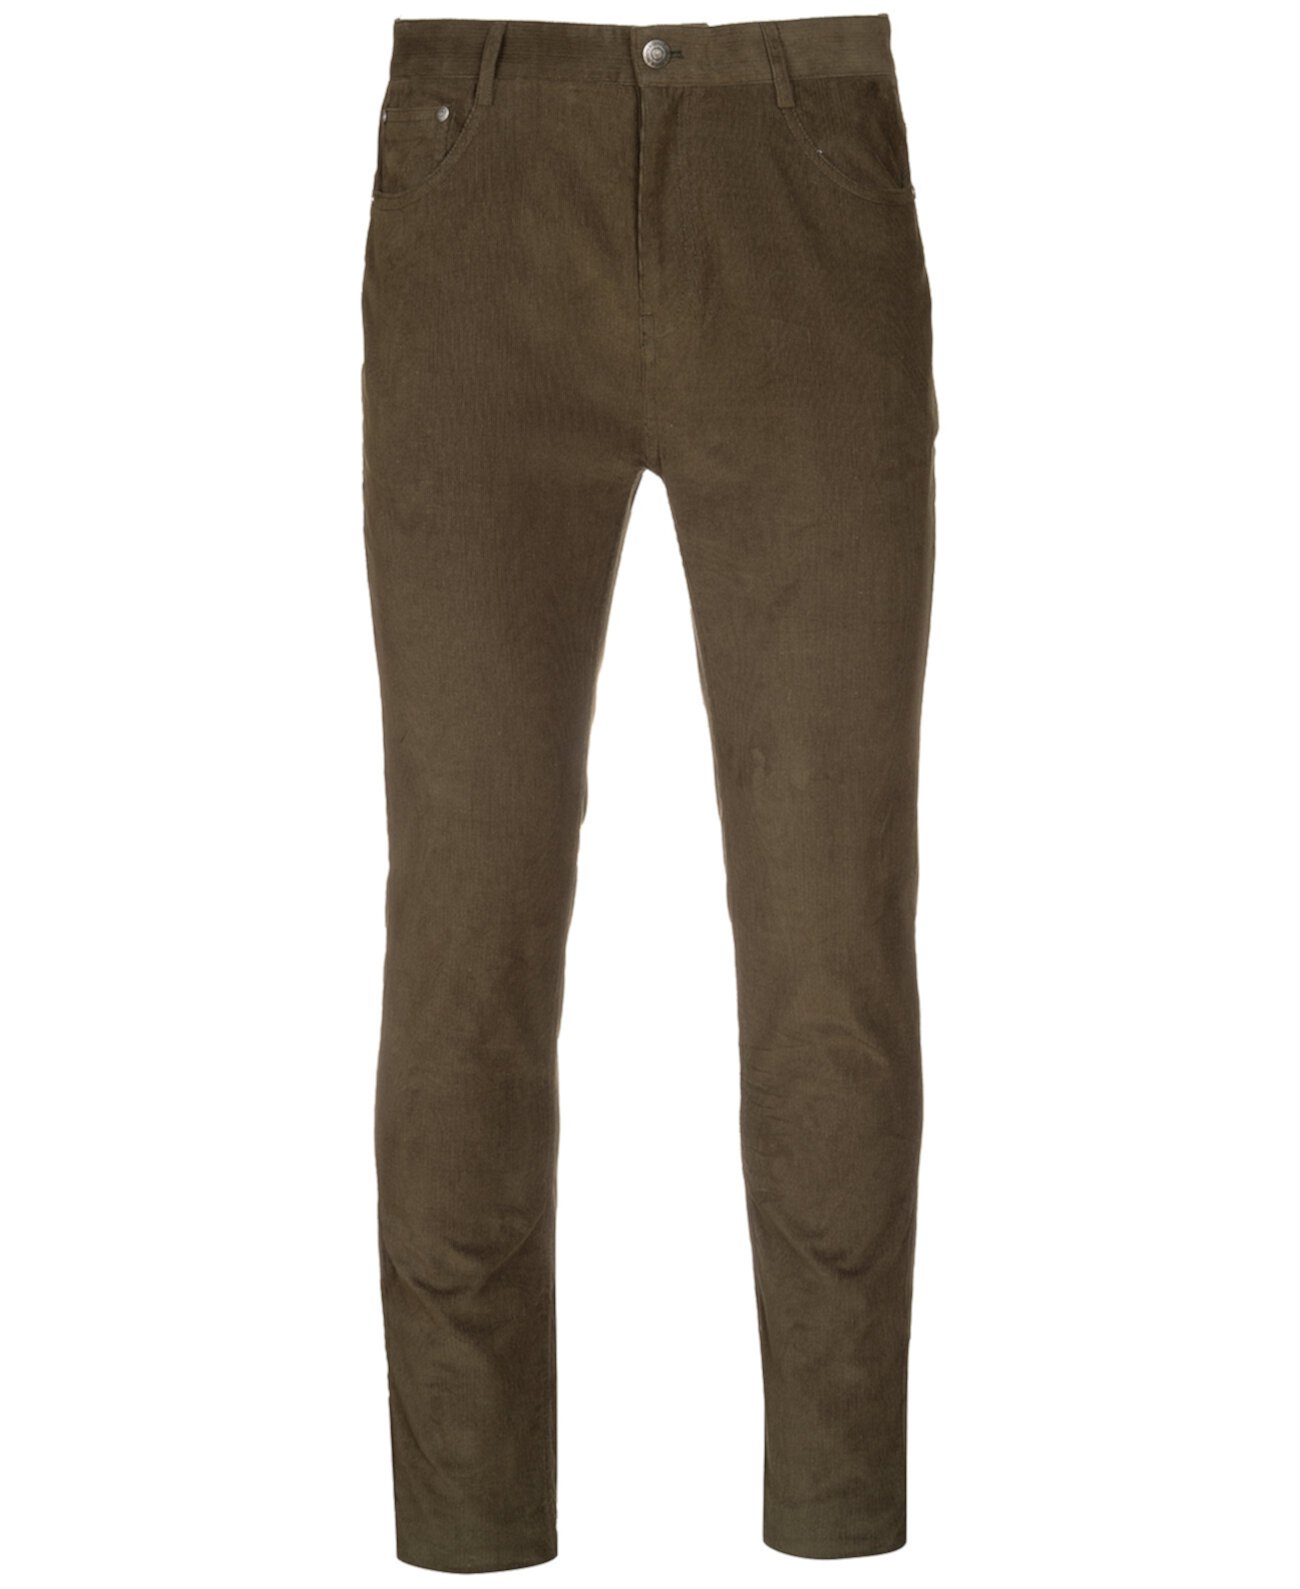 Мужские вельветовые брюки Slim-Fit Paisley & Gray